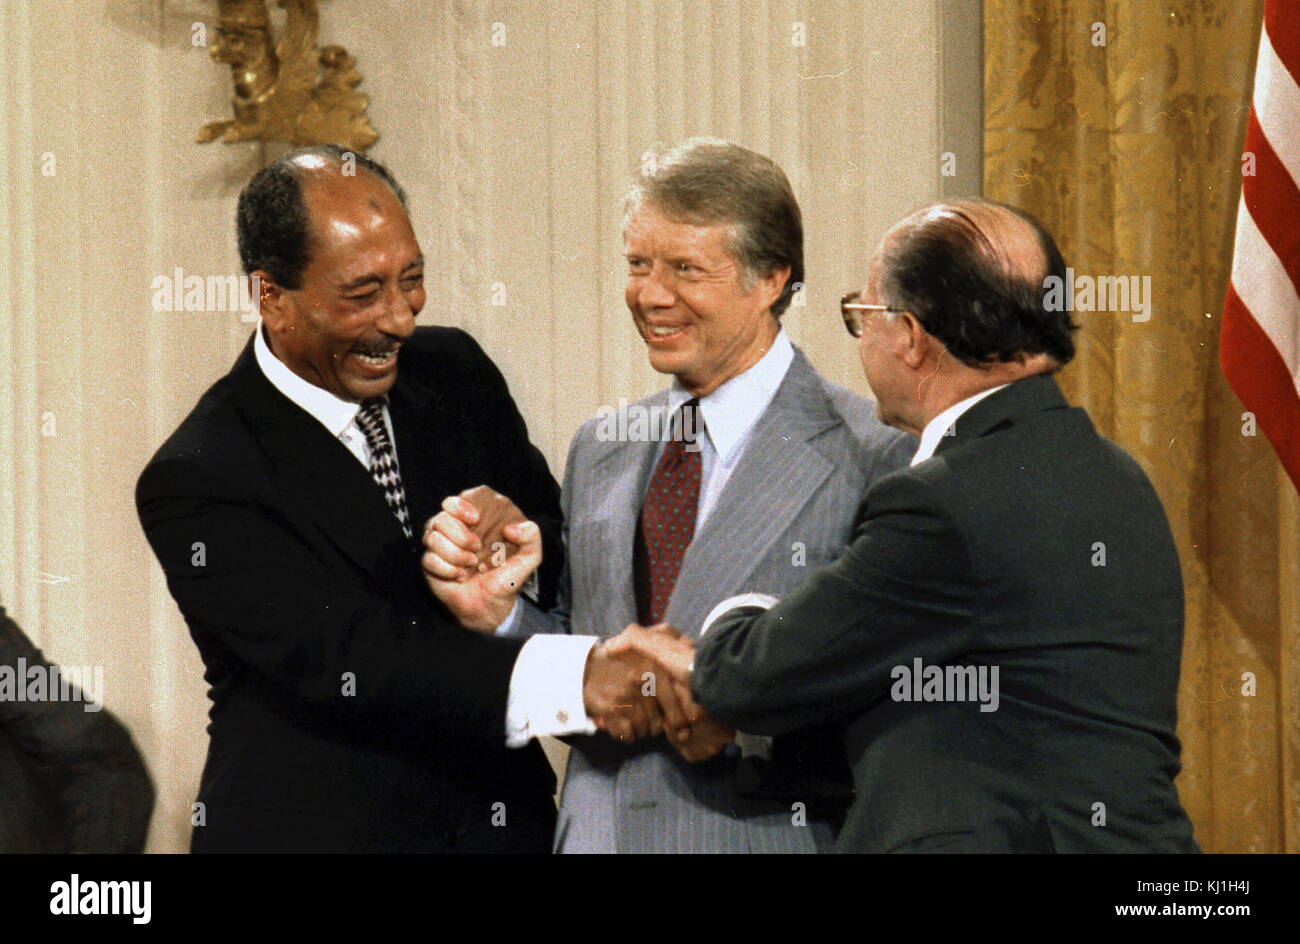 Le président égyptien Anouar El Sadate, le président des États-Unis Jimmy Carter et le Premier Ministre israélien, Meacham commencent, célébrer après la signature de la paix de Camp David 1978 Banque D'Images